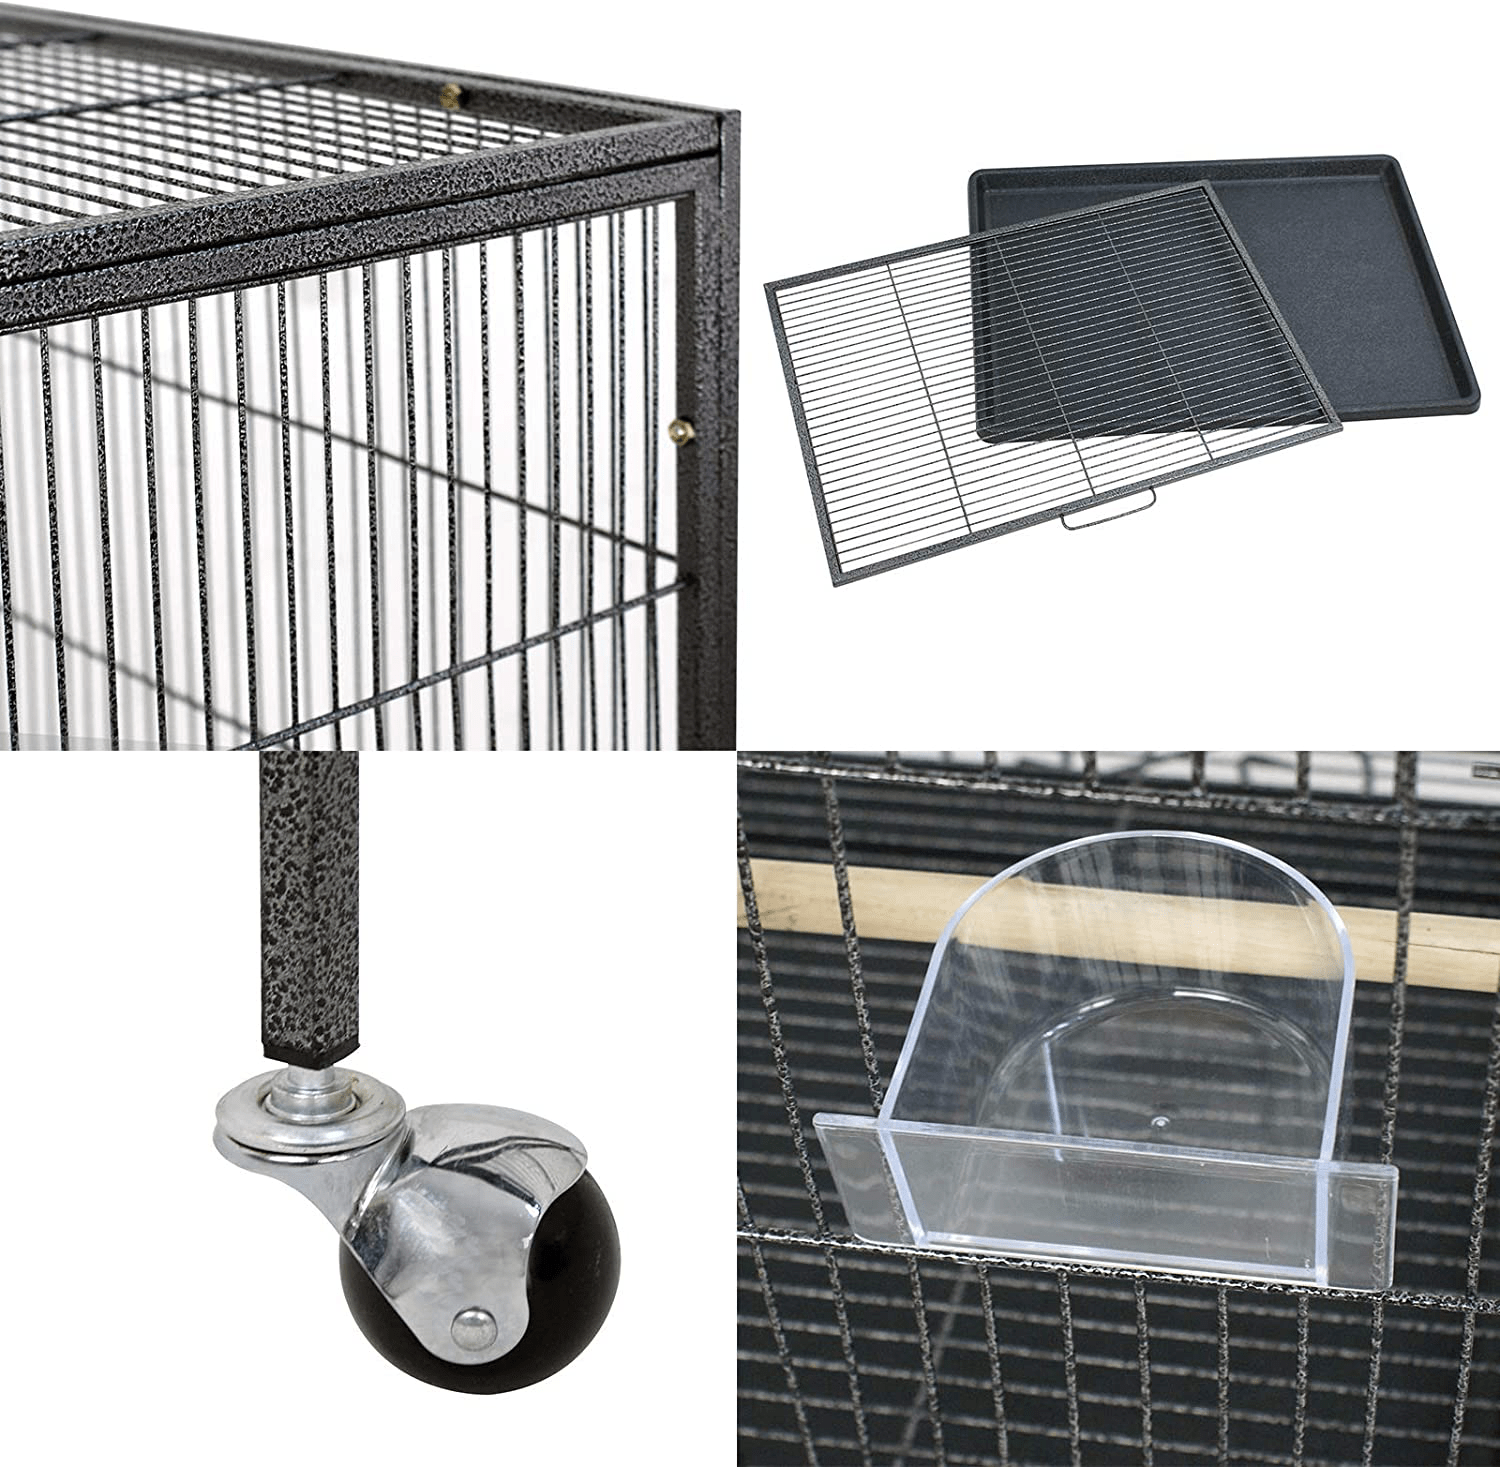 Accessoires cage à oiseaux - Accessoires - OiseauxAbreuvoir calopsitte  7,5x15x5,5cm 1pcs) - Vadigran